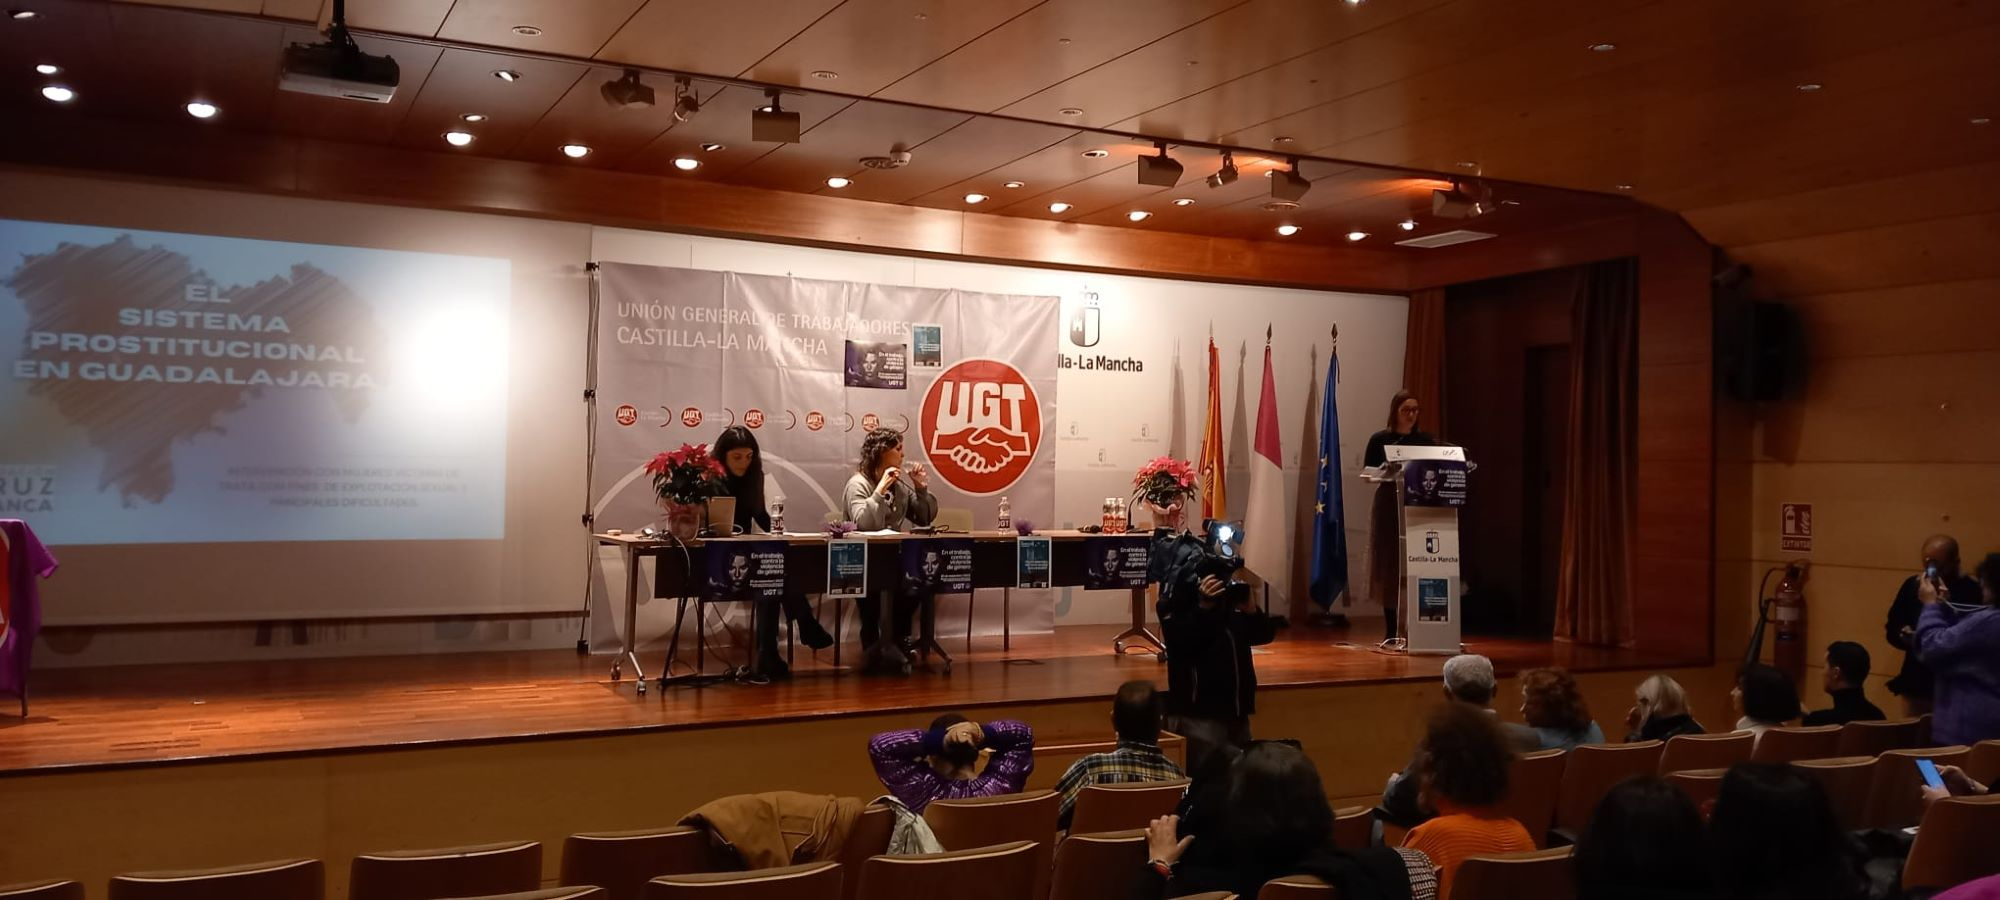 UGT ha celebrado una jornada para denunciar todas las violencias contra las mujeres, especialmente en el mundo laboral.